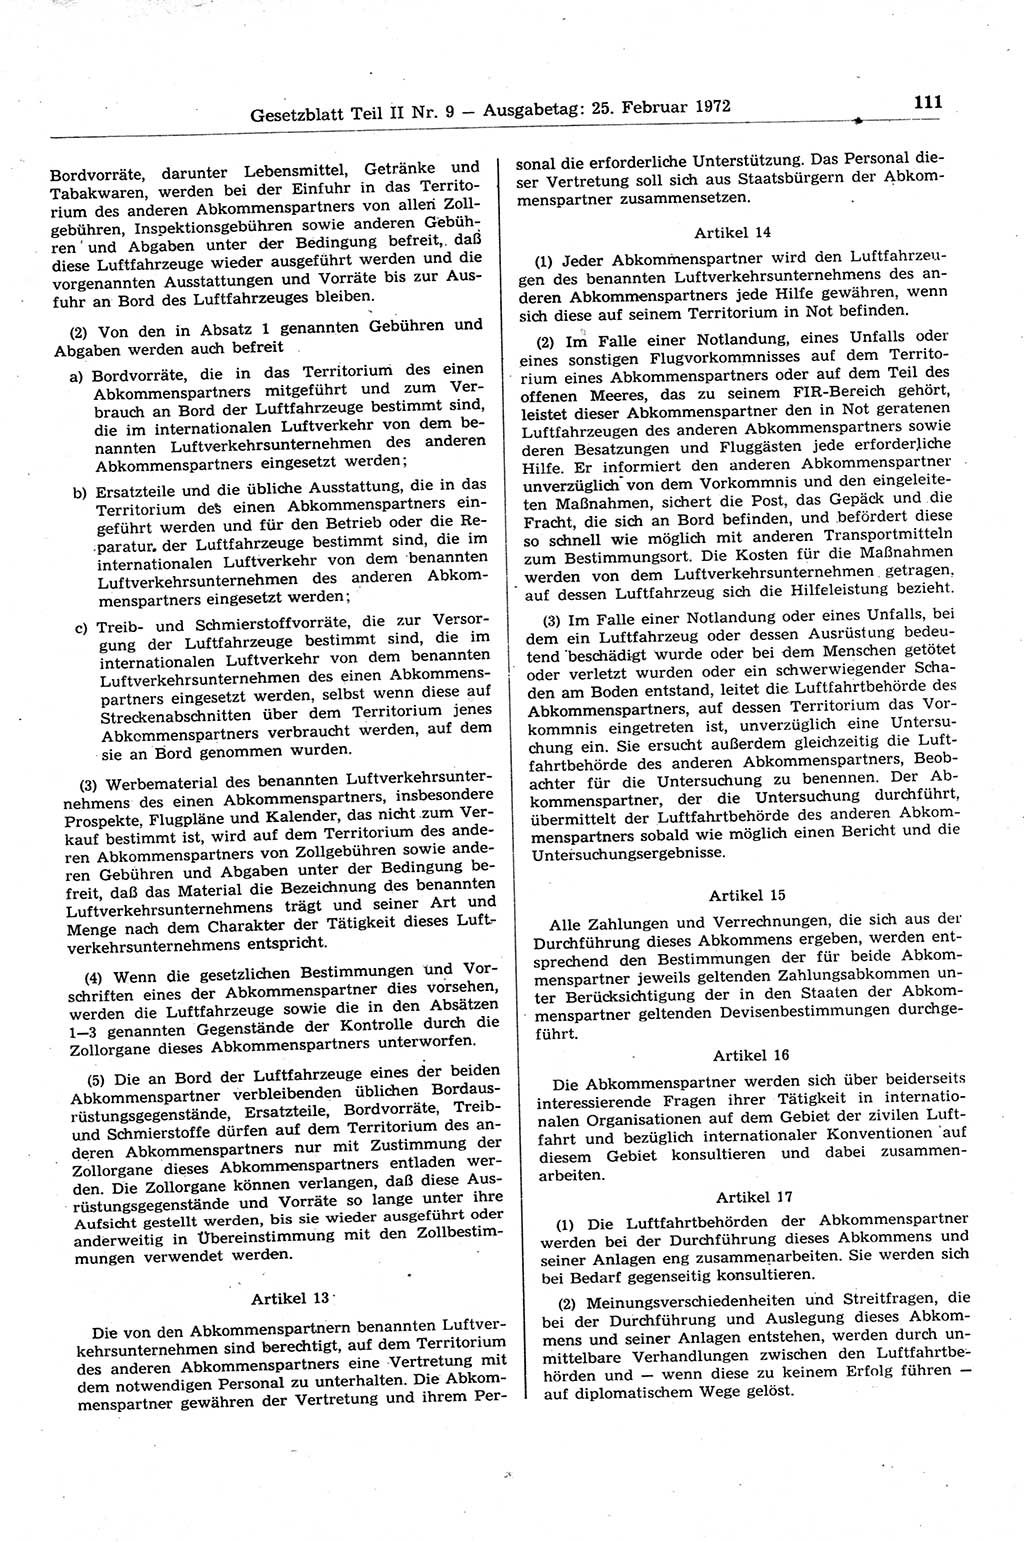 Gesetzblatt (GBl.) der Deutschen Demokratischen Republik (DDR) Teil ⅠⅠ 1972, Seite 111 (GBl. DDR ⅠⅠ 1972, S. 111)